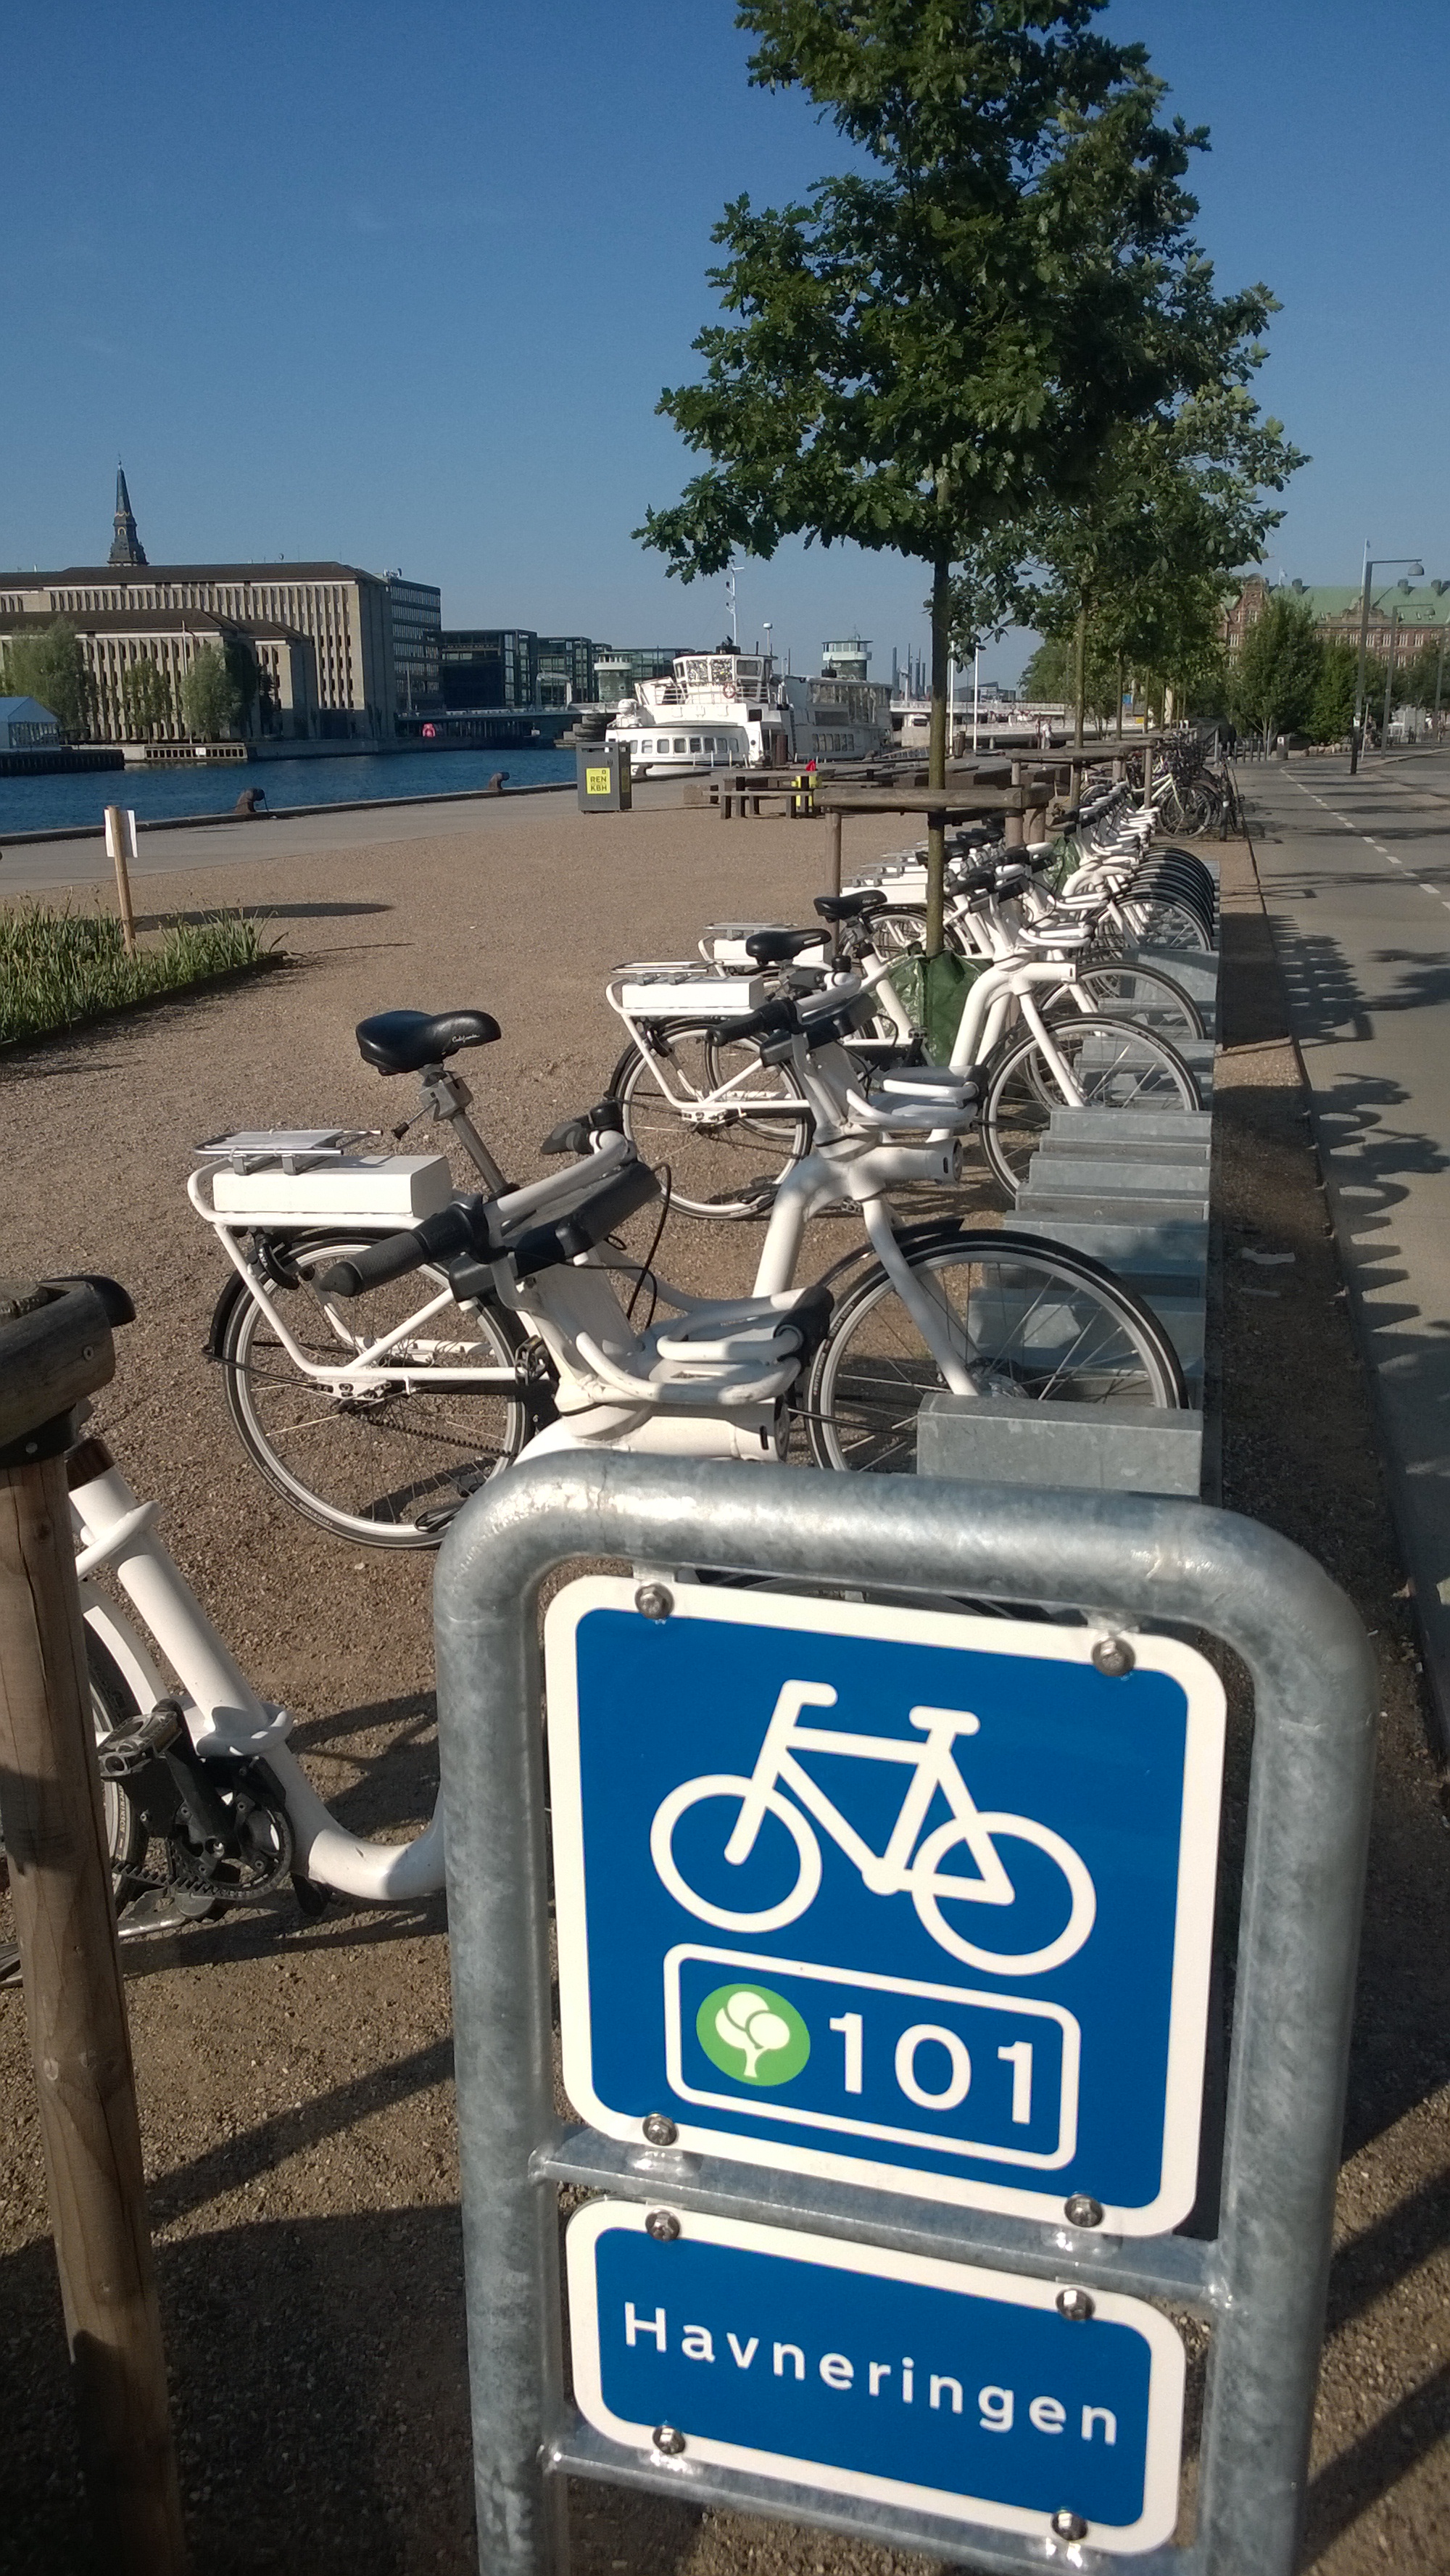 Veloausleihstation von City-Bike Kopenhagen (www.bycyklen.dk) mit den E-Bikes von Gobike.com